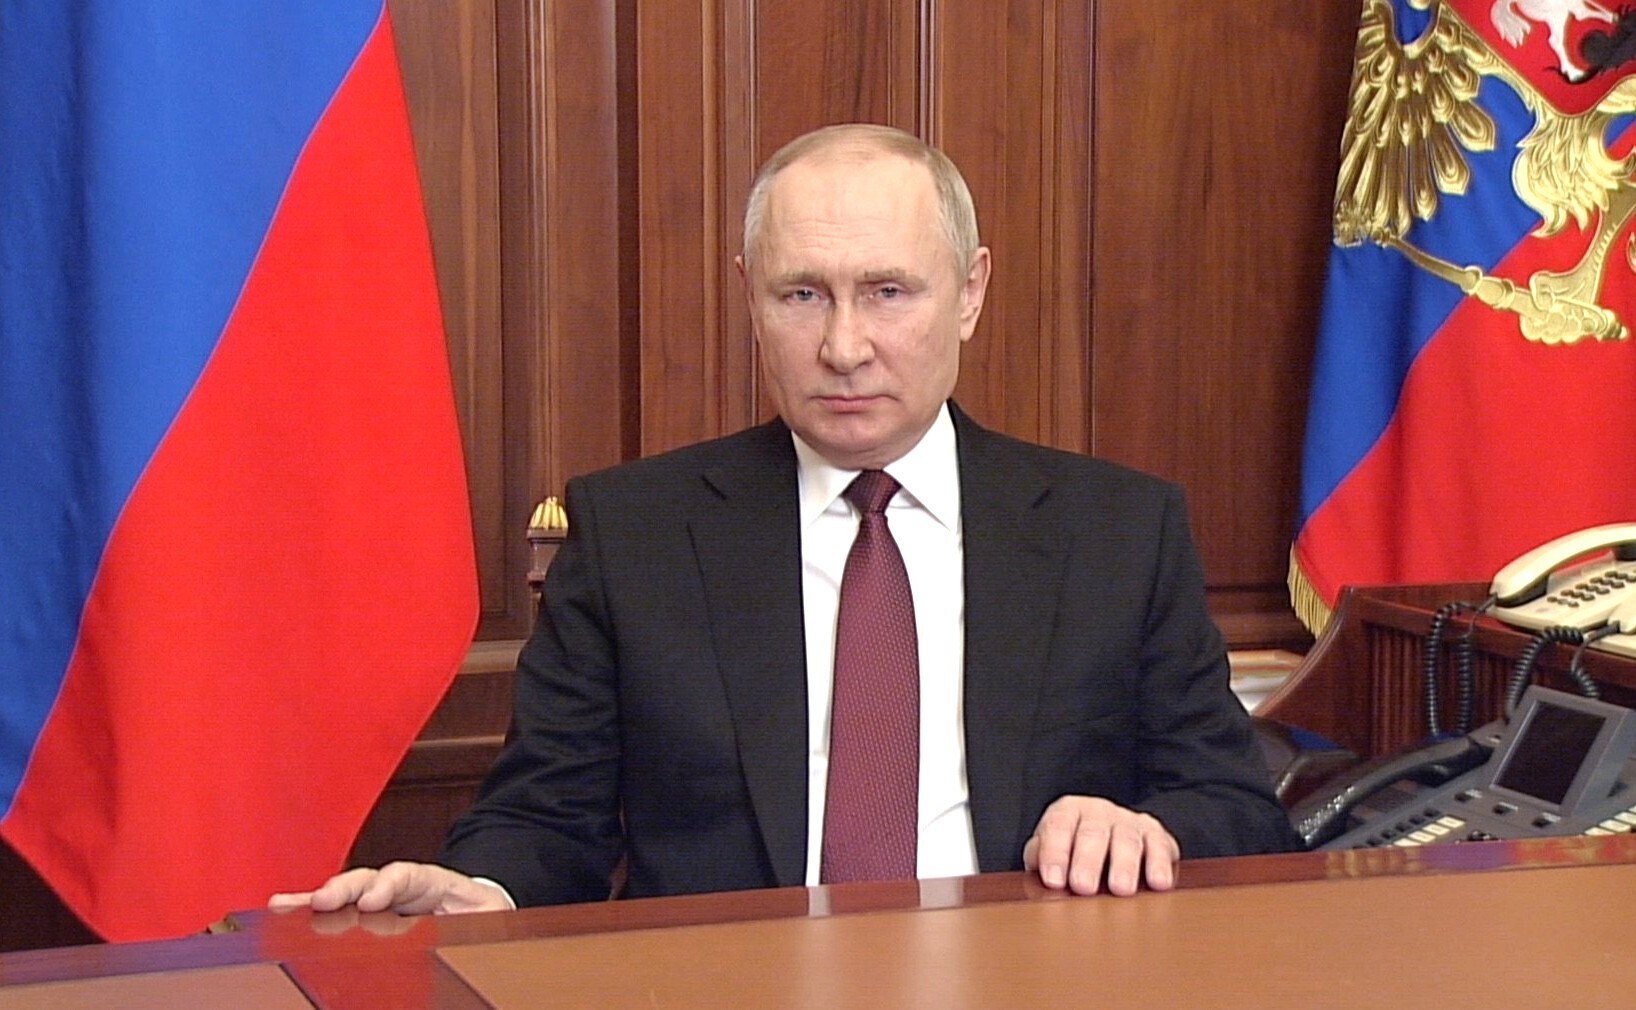 Der russische Präsident Wladimir Putin am 24. Februar in Moskau.